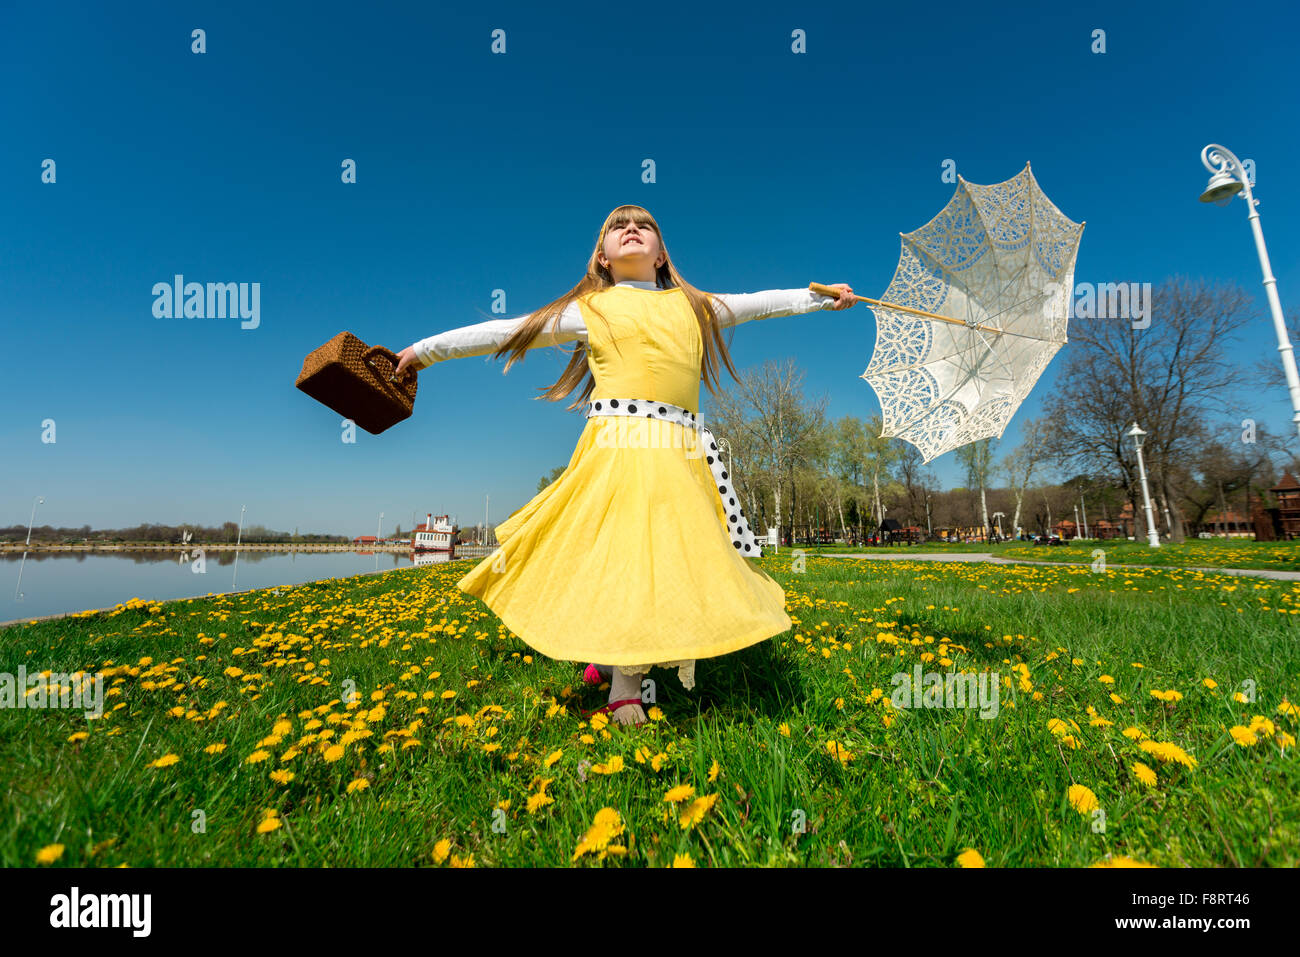 Petite fille jouant dans la nature, jouissant de la liberté tout en tournant sur son axe Banque D'Images